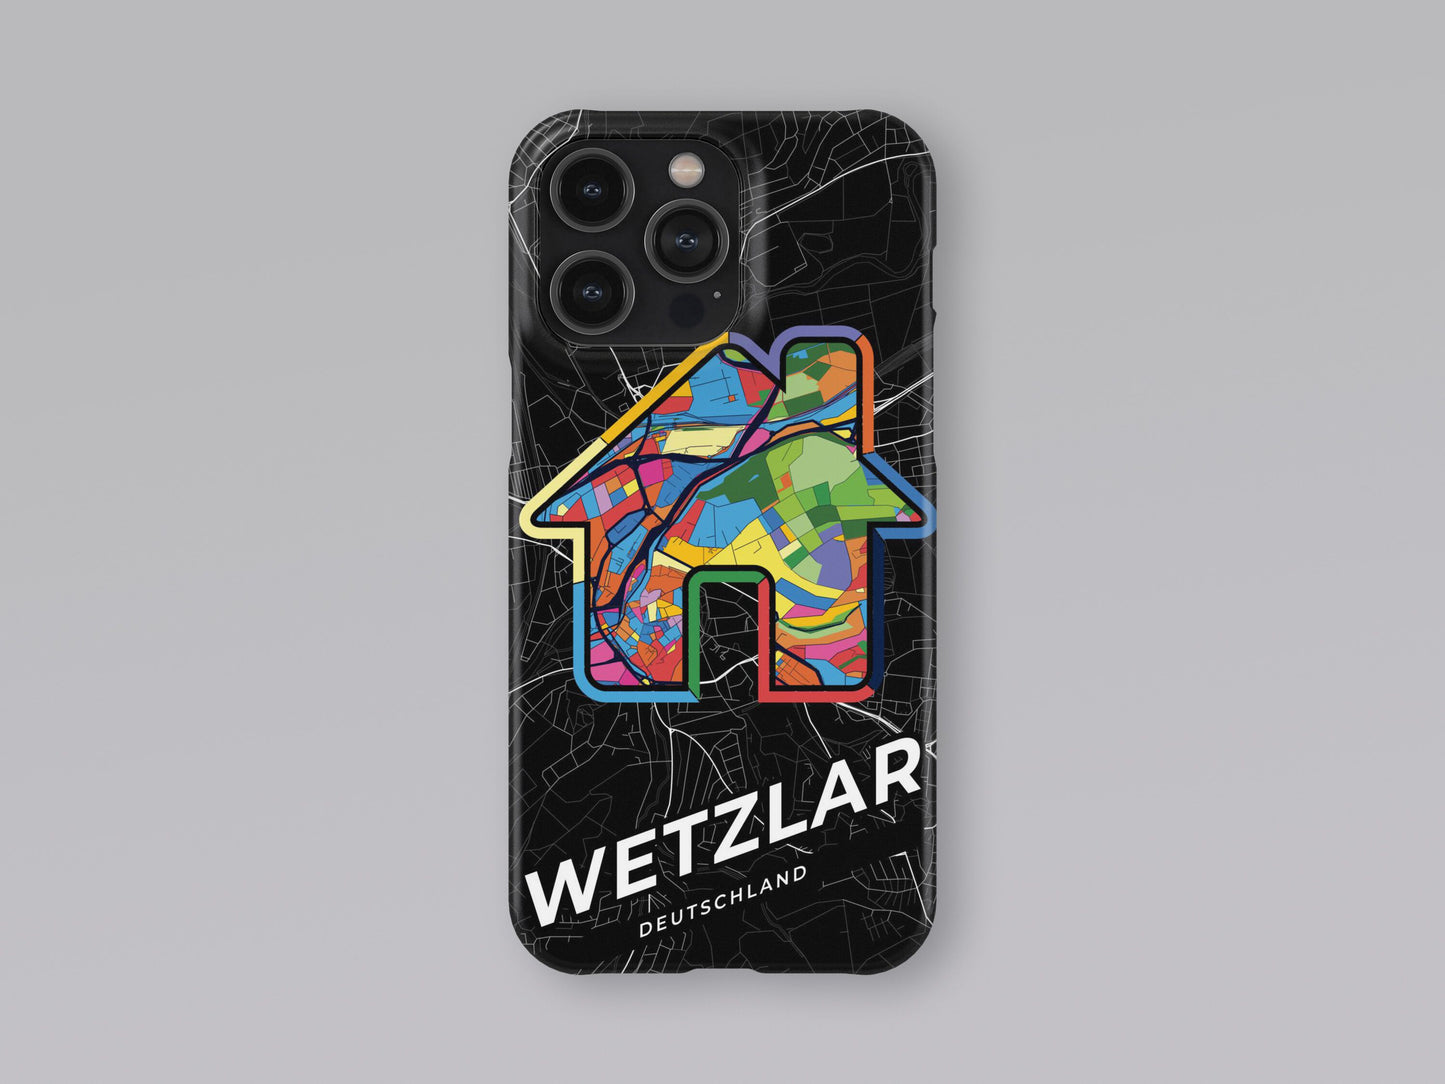 Wetzlar Deutschland slim phone case with colorful icon 3